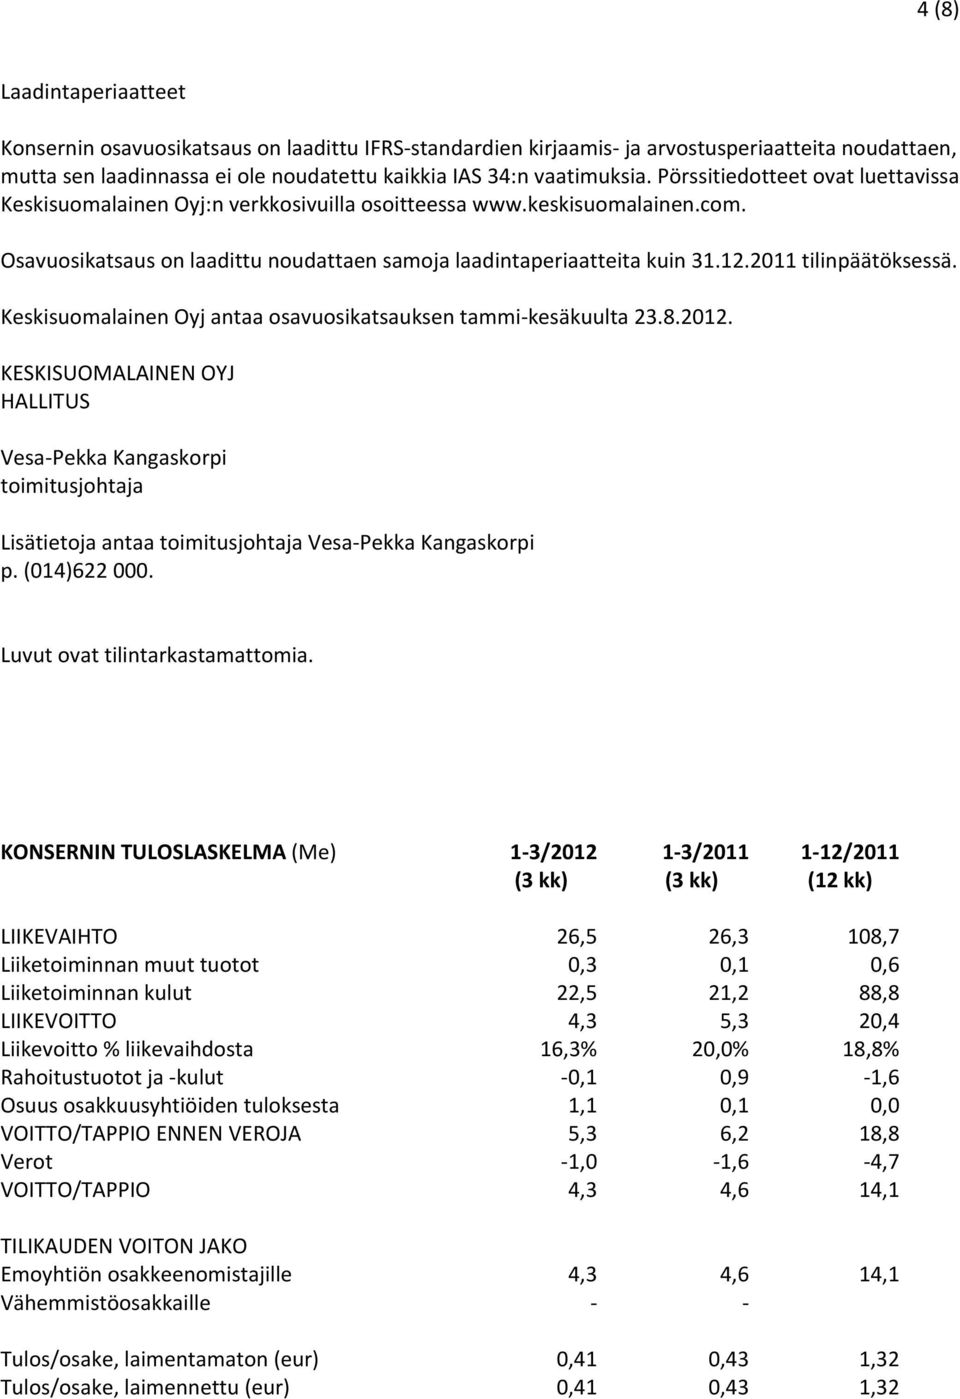 2011 tilinpäätöksessä. Keskisuomalainen Oyj antaa osavuosikatsauksen tammi kesäkuulta 23.8.2012.